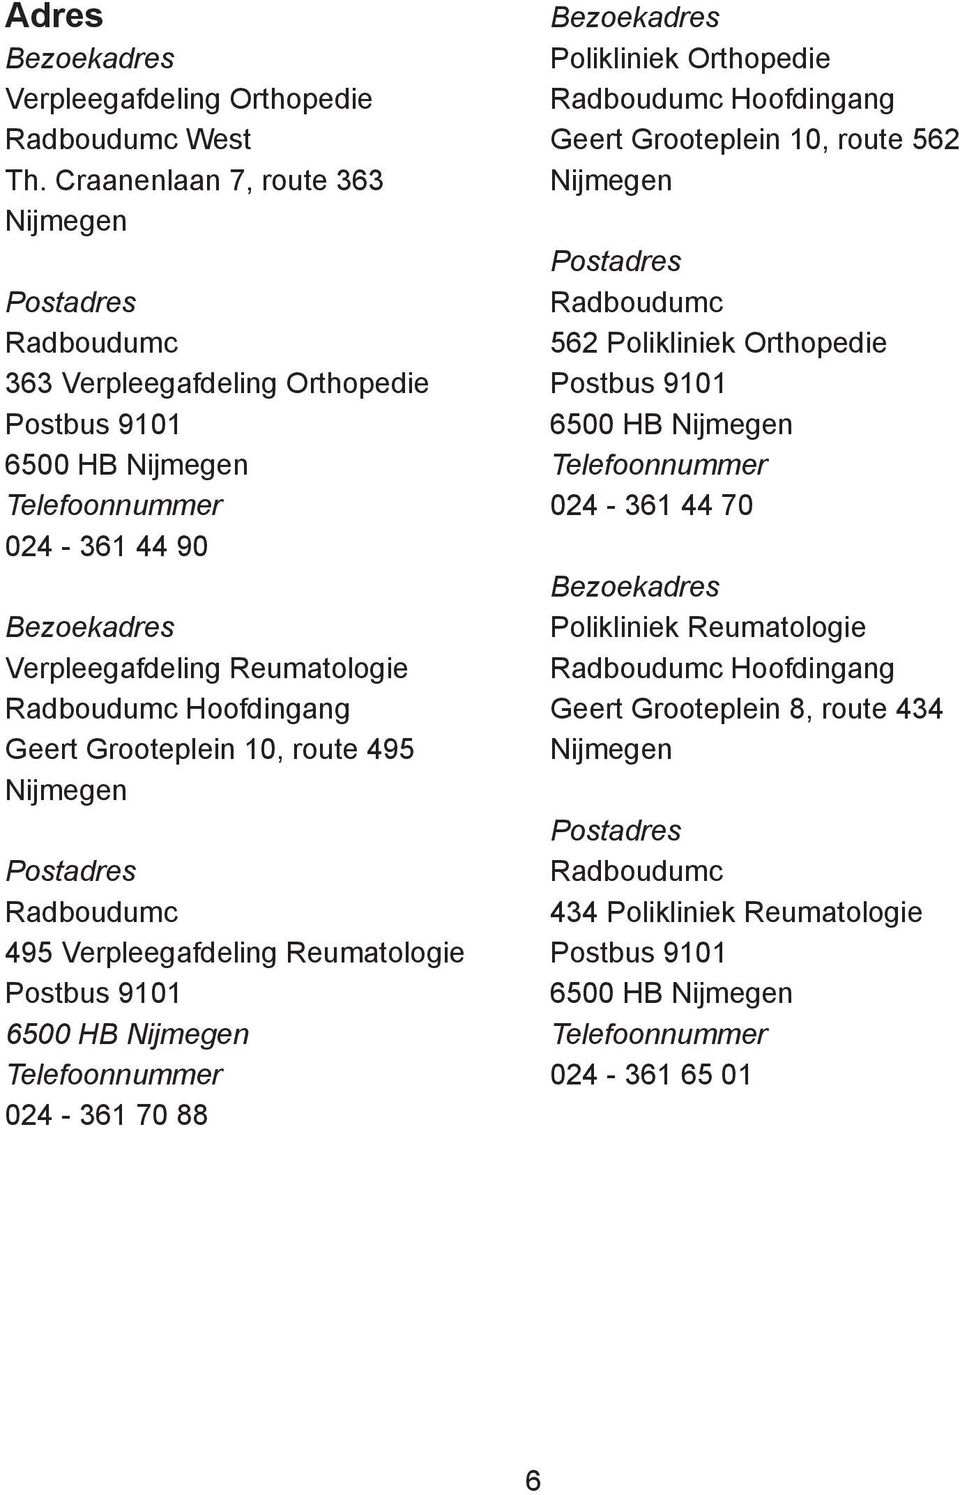 Hoofdingang Geert Grooteplein 10, route 495 Nijmegen Postadres Radboudumc 495 Verpleegafdeling Reumatologie Postbus 9101 6500 HB Nijmegen Telefoonnummer 024-361 70 88 Bezoekadres Polikliniek